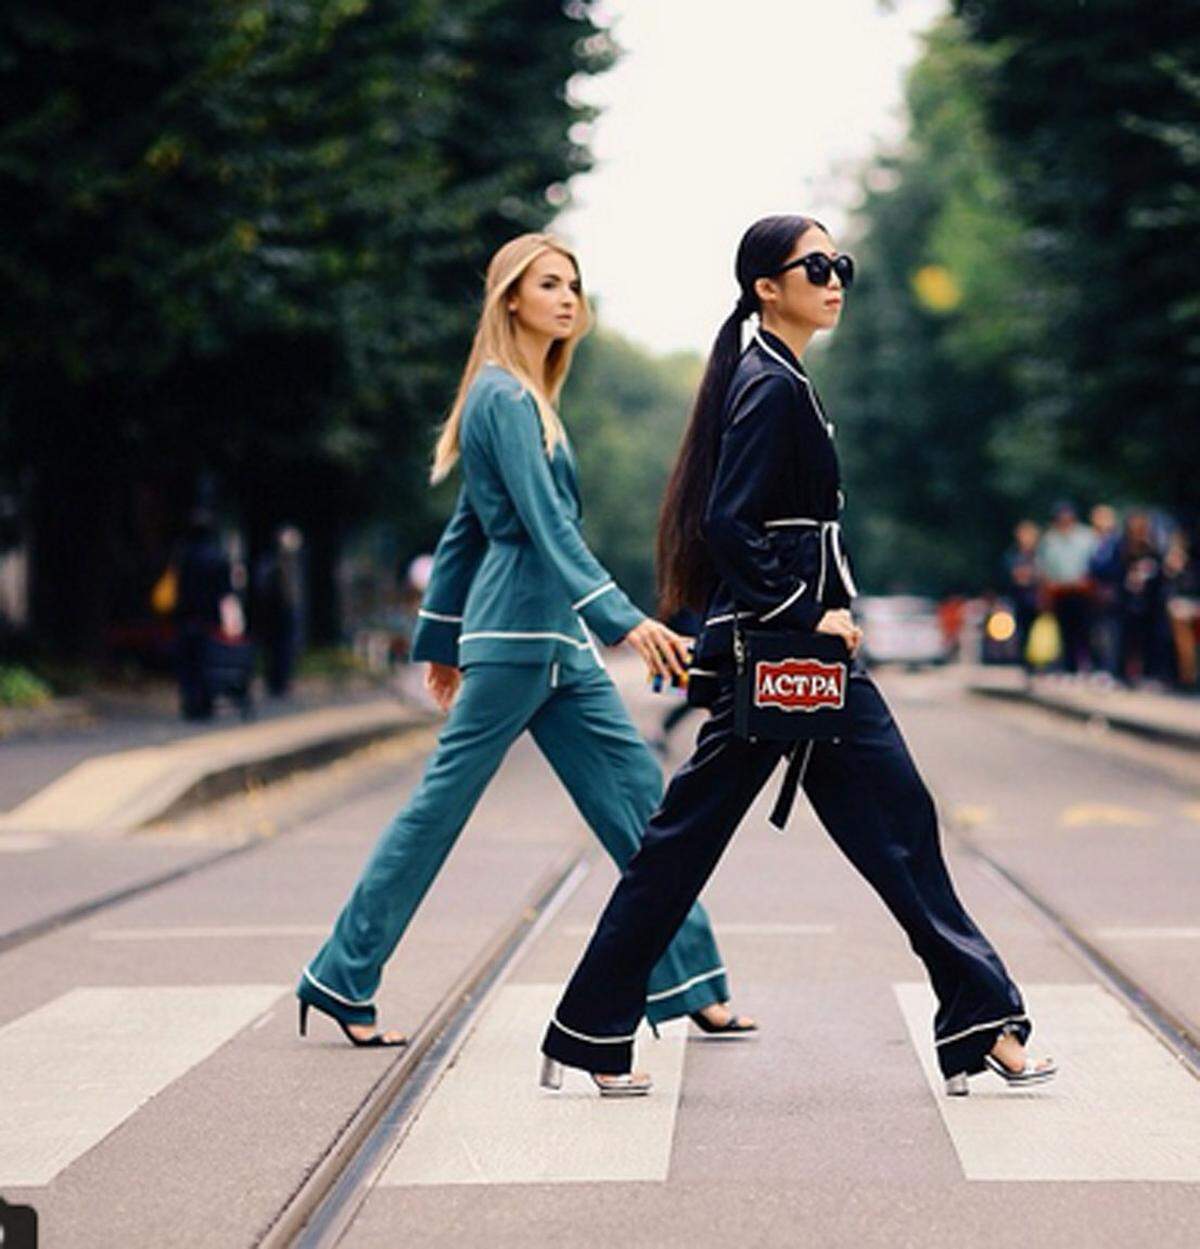 Den Look von Hugh Hefner nahmen sich die beiden Modebloggerinnen Maria Kolosova und Oksana On zum Vorbild.